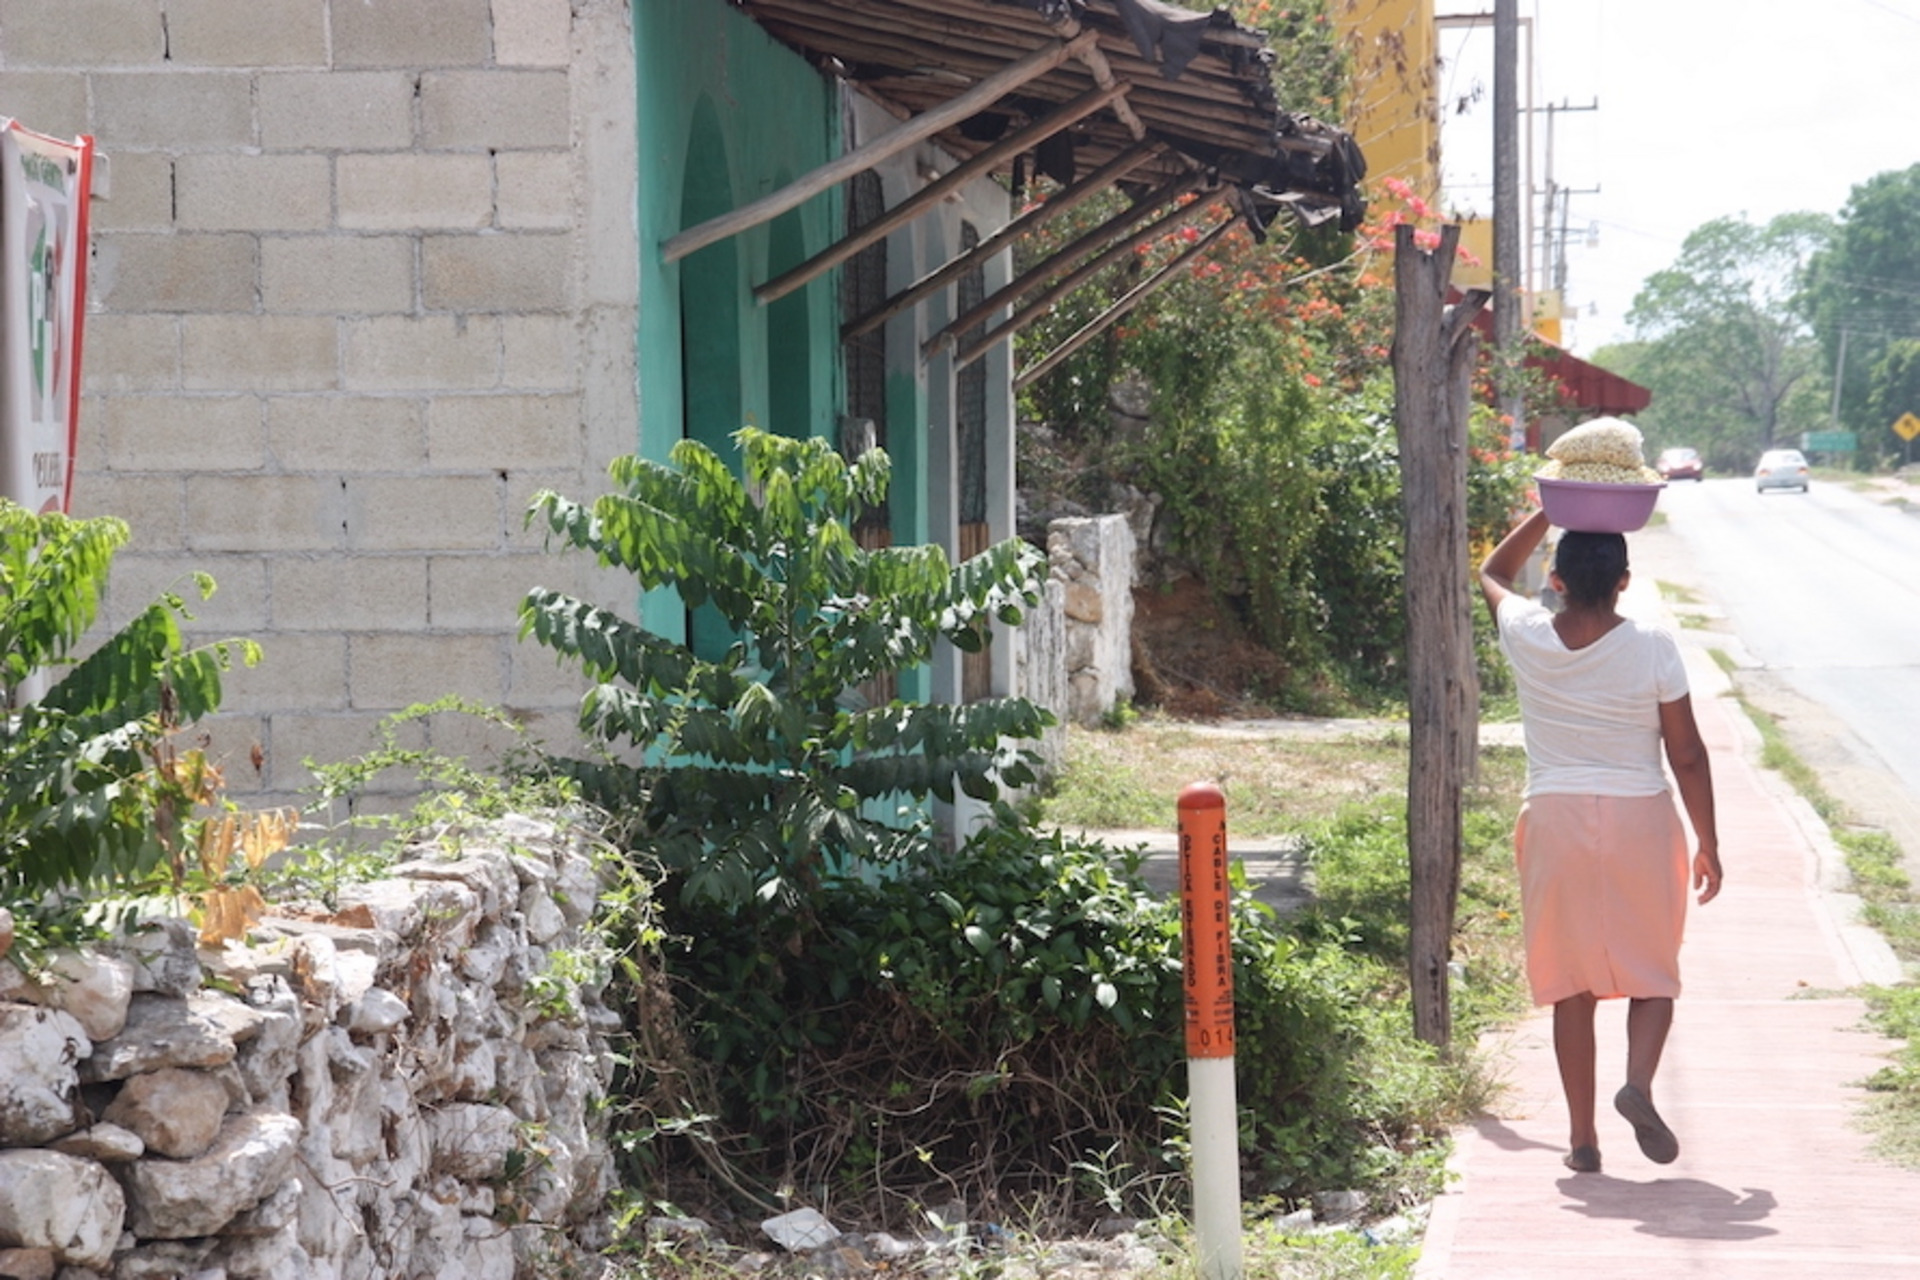 Eine Frau läuft durch die Straßen von Mexico und balanciert eine Schüssel mit Essen auf dem Kopf.